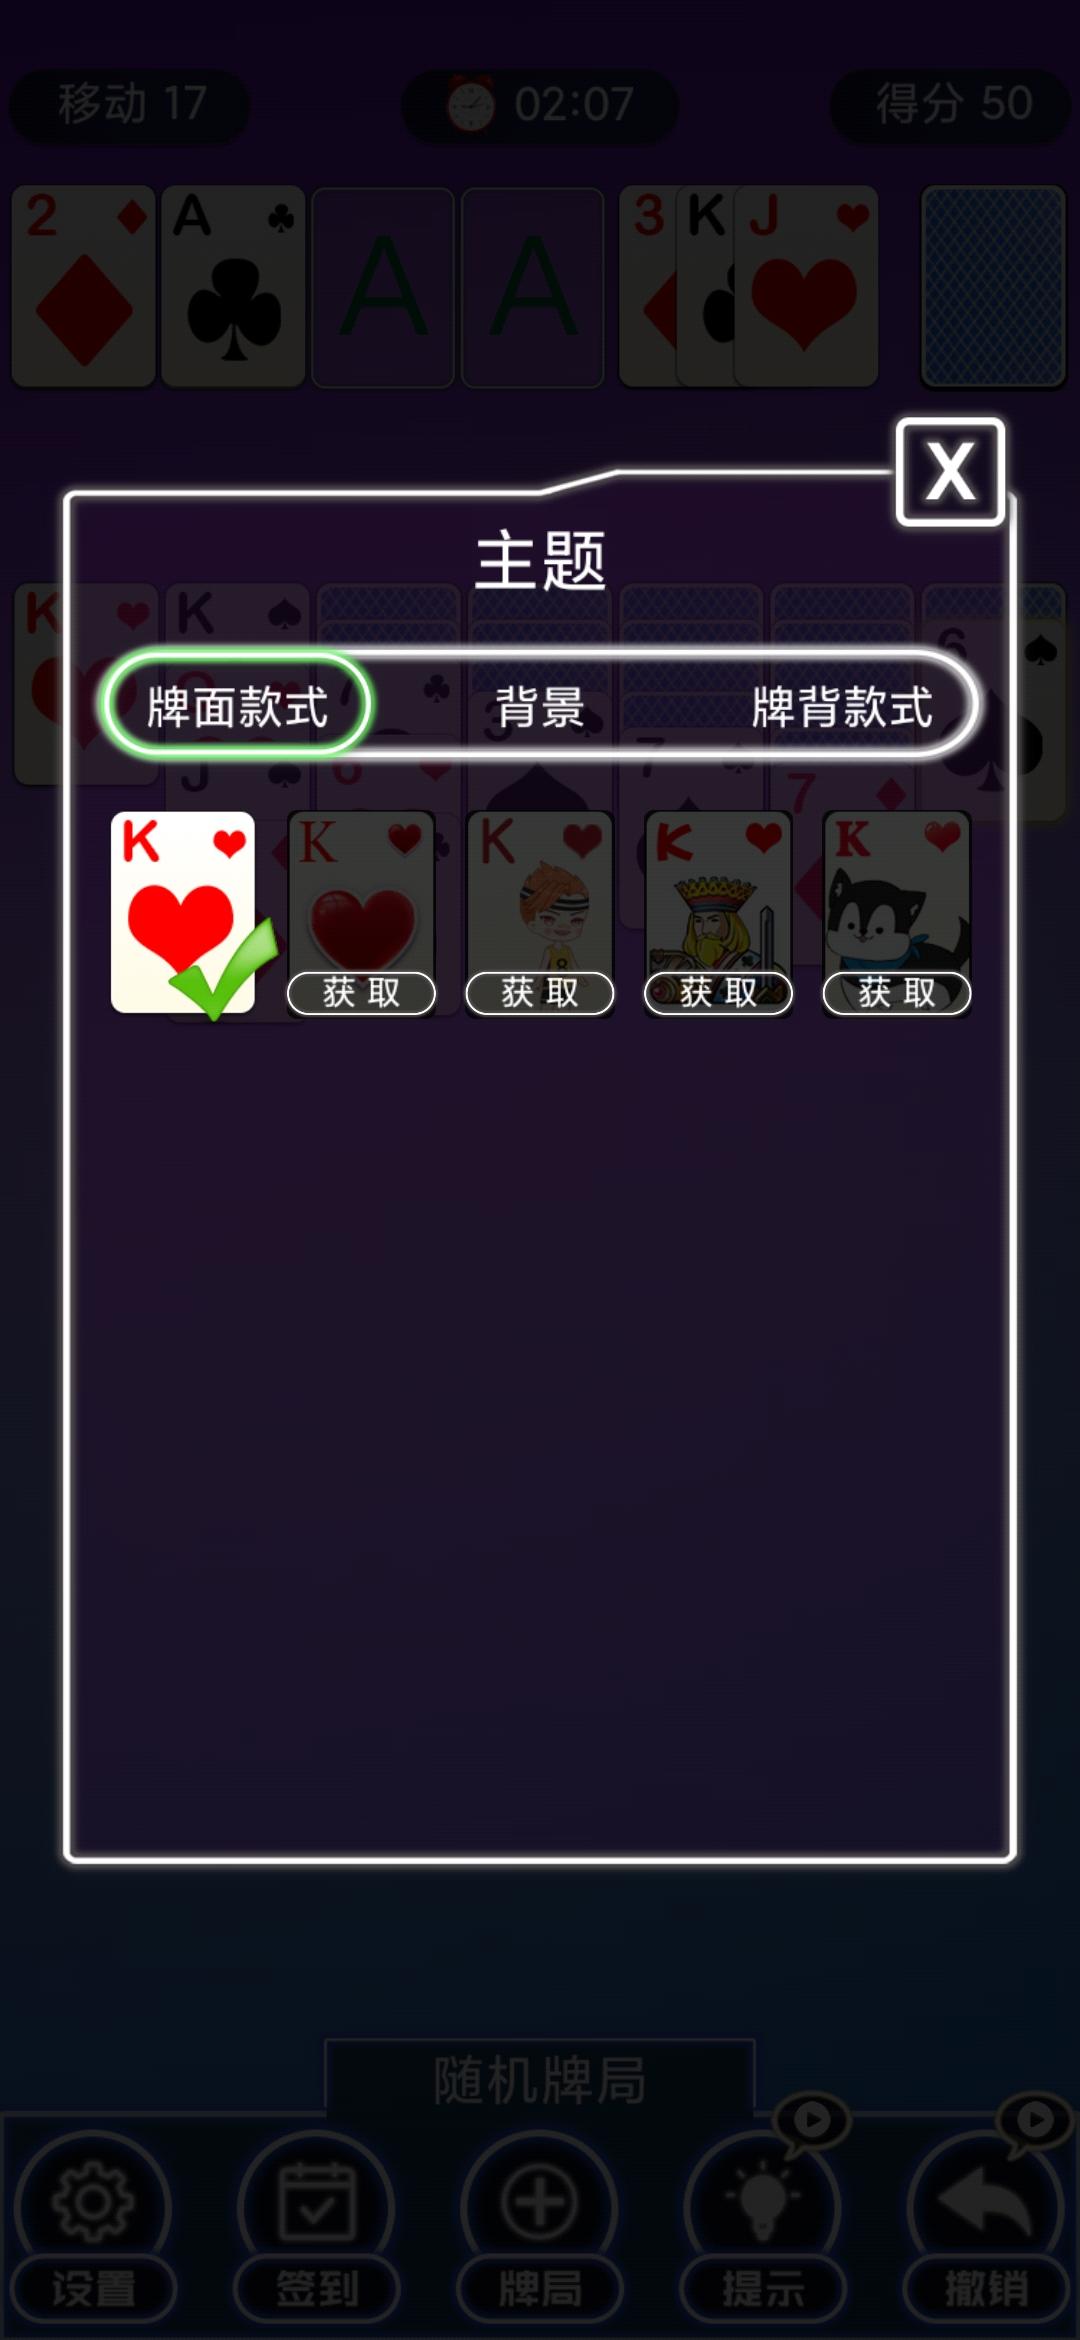 Screenshot 1 of tarjeta 1.0